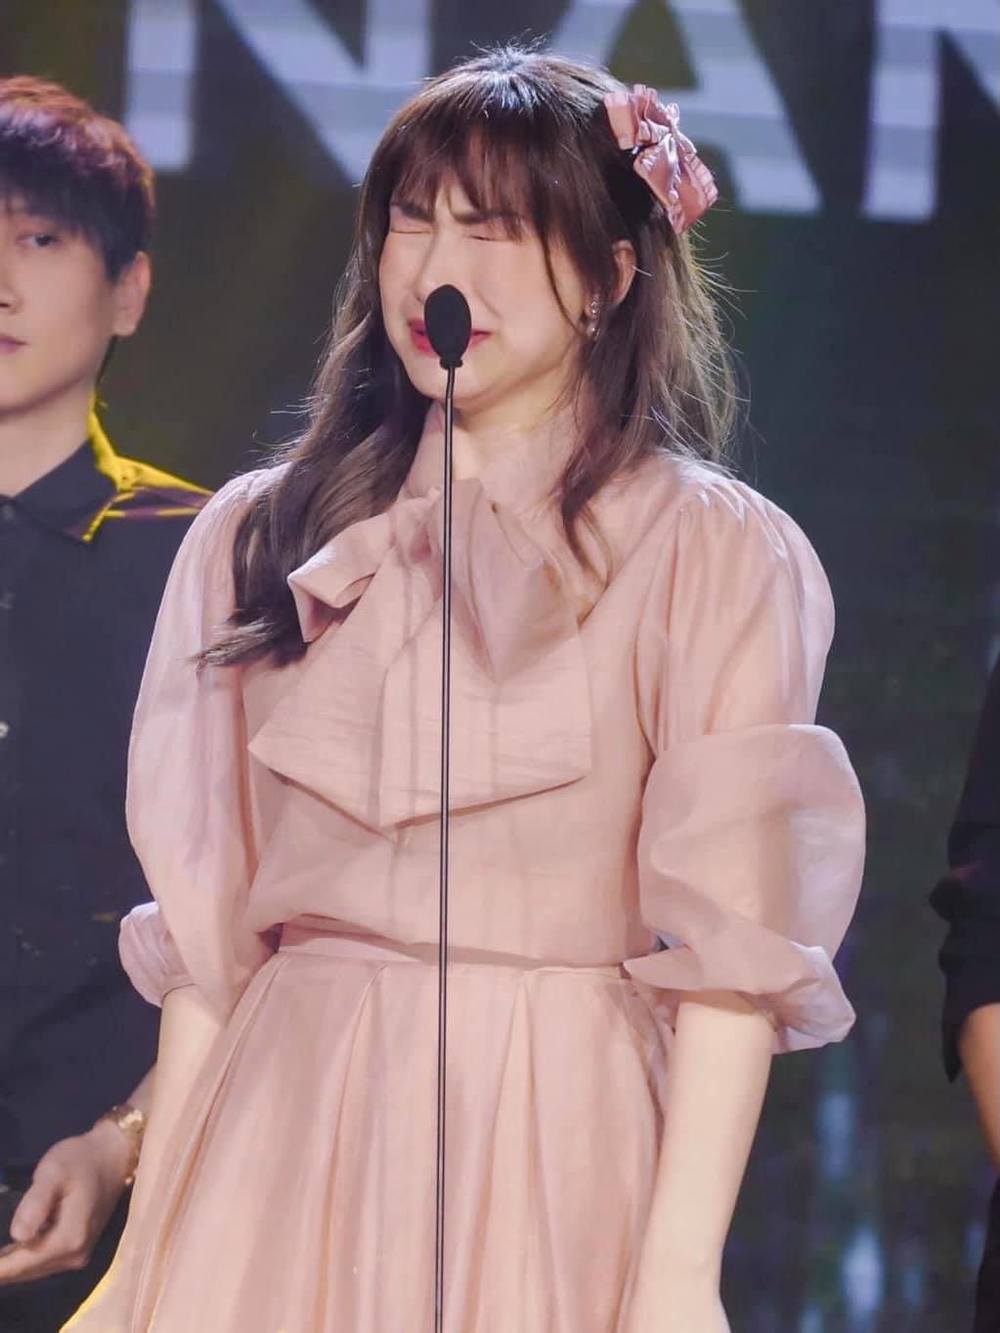  
Hòa Minzy khóc nức nở khi nhận được cúp trên sân khấu. (Ảnh: FBNV)